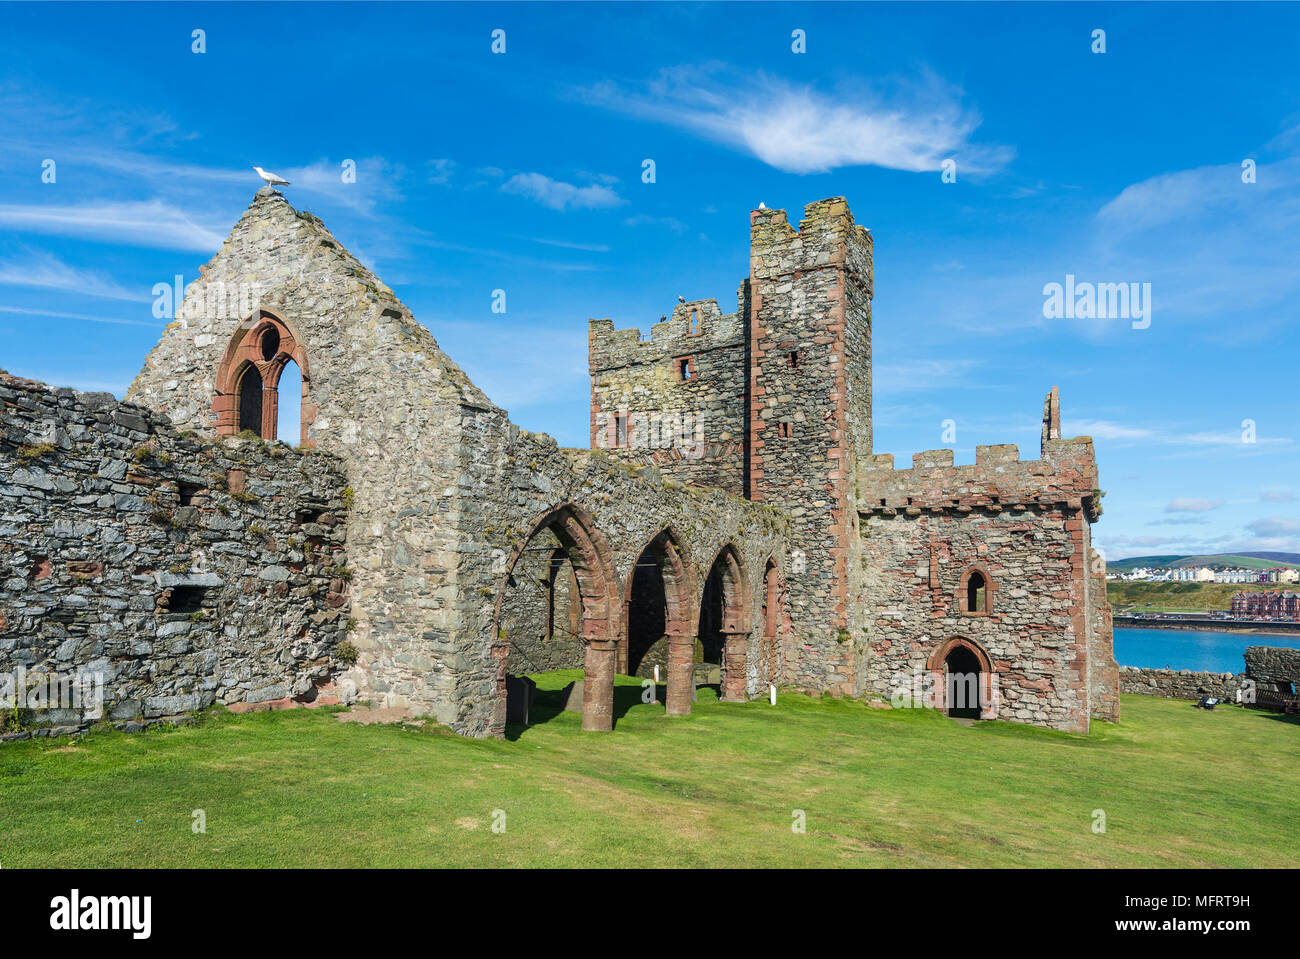 Peel castle, Peel, Isle of Man, United Kingdom Stock Photo